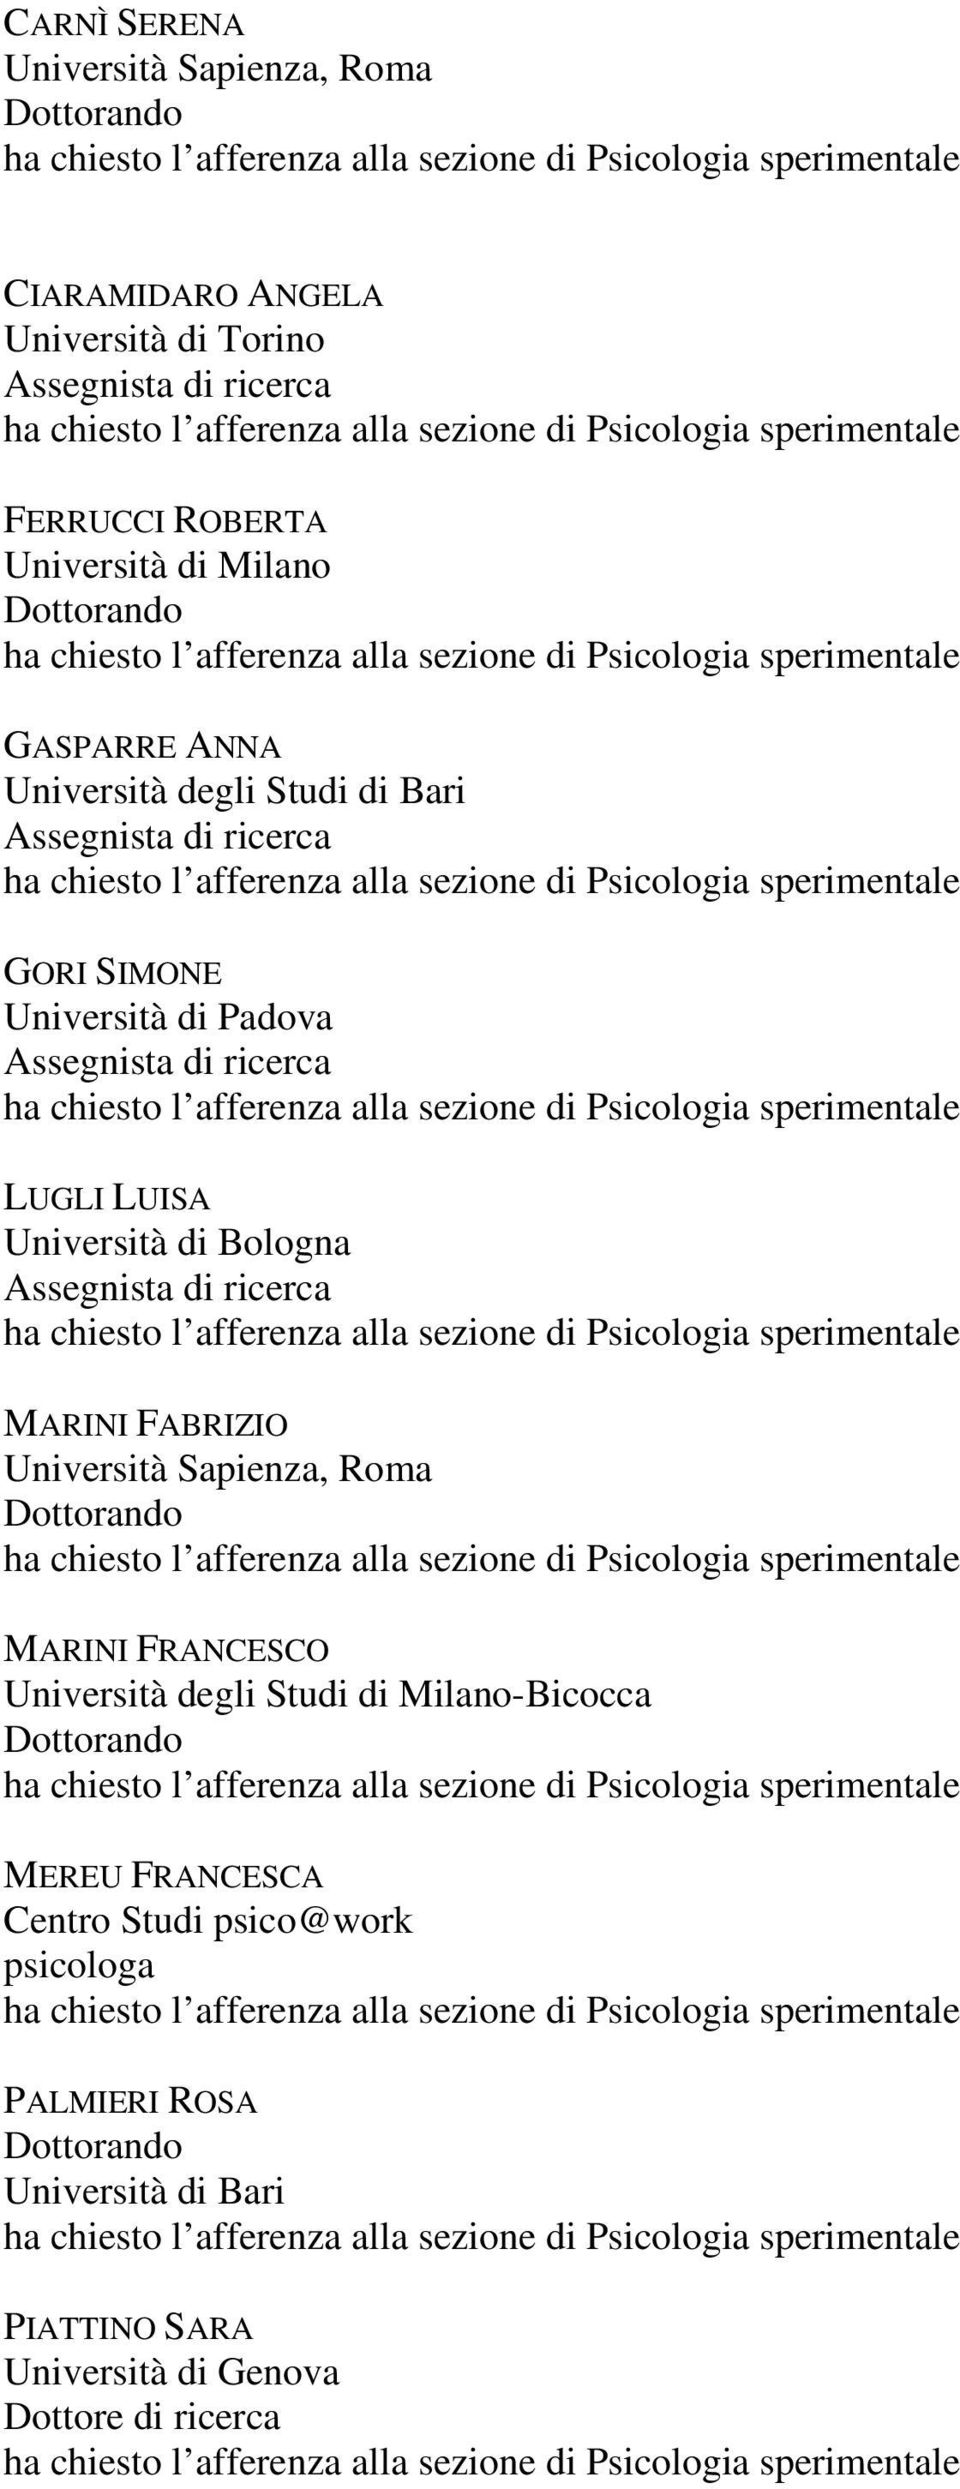 FRANCESCO Università degli Studi di Milano-Bicocca MEREU FRANCESCA Centro Studi